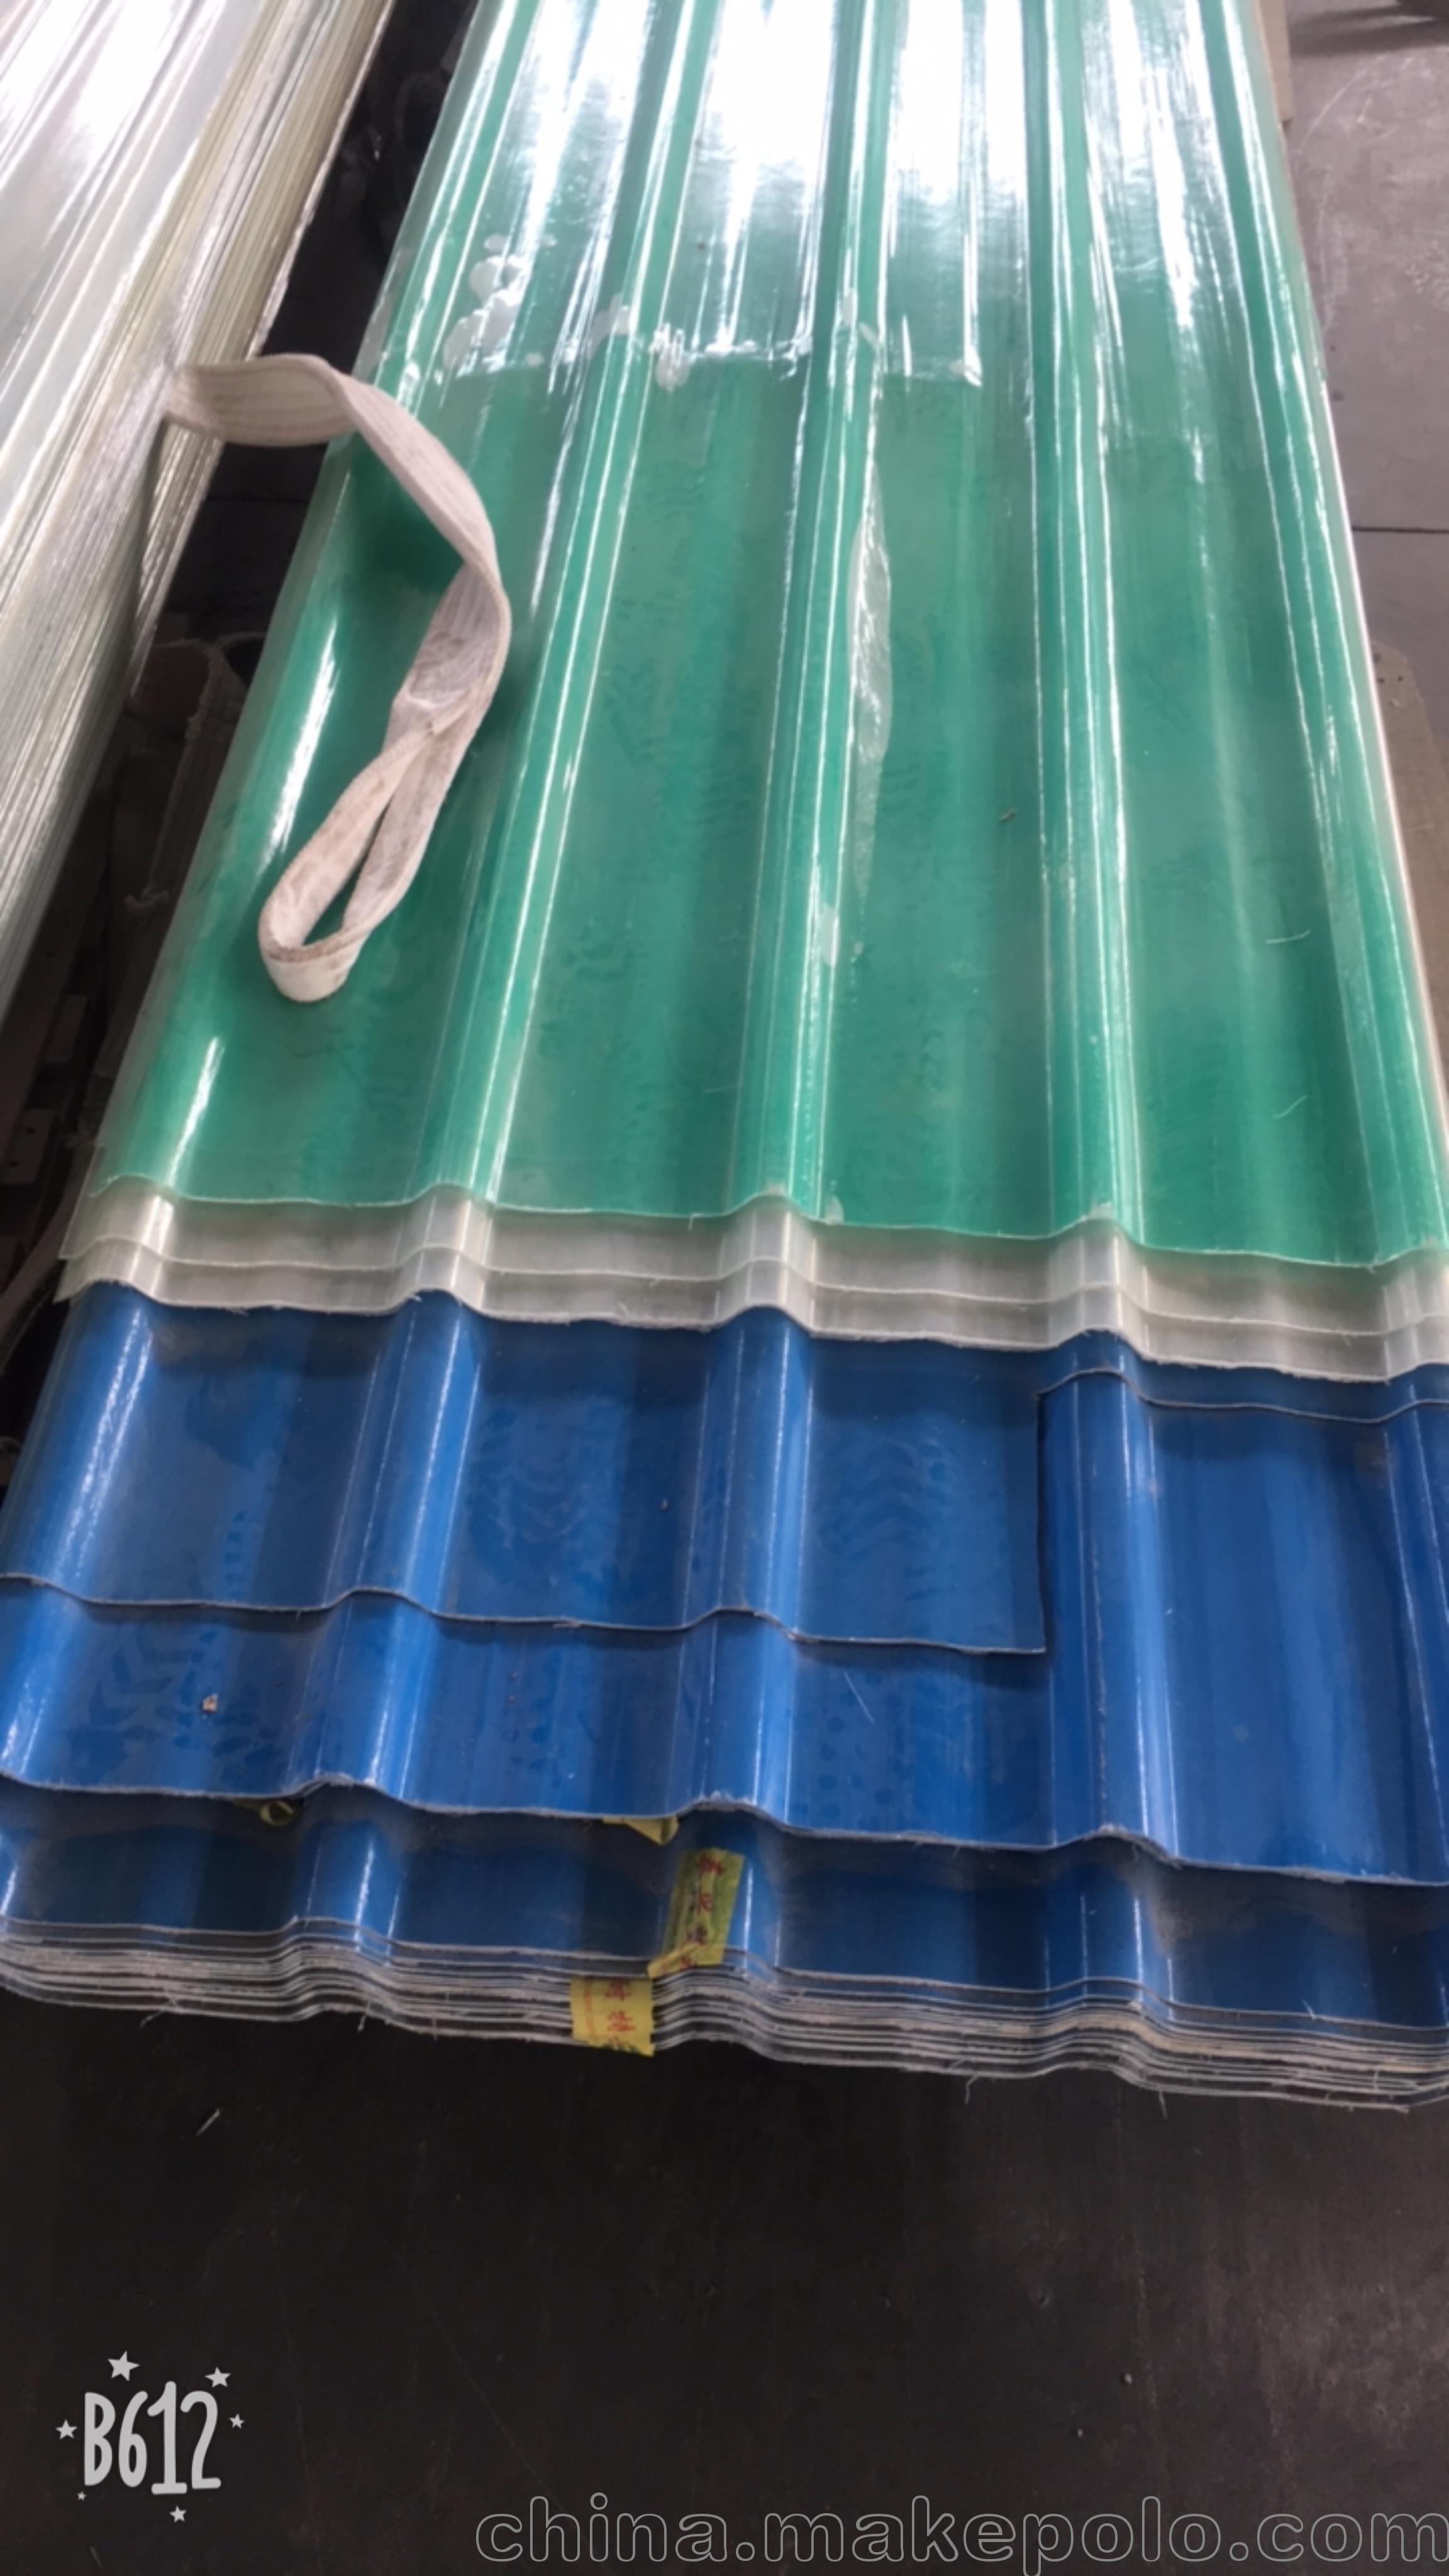 浙江省台州市艾珀耐特厂家直销采光瓦透明瓦 frp 玻璃钢树脂瓦